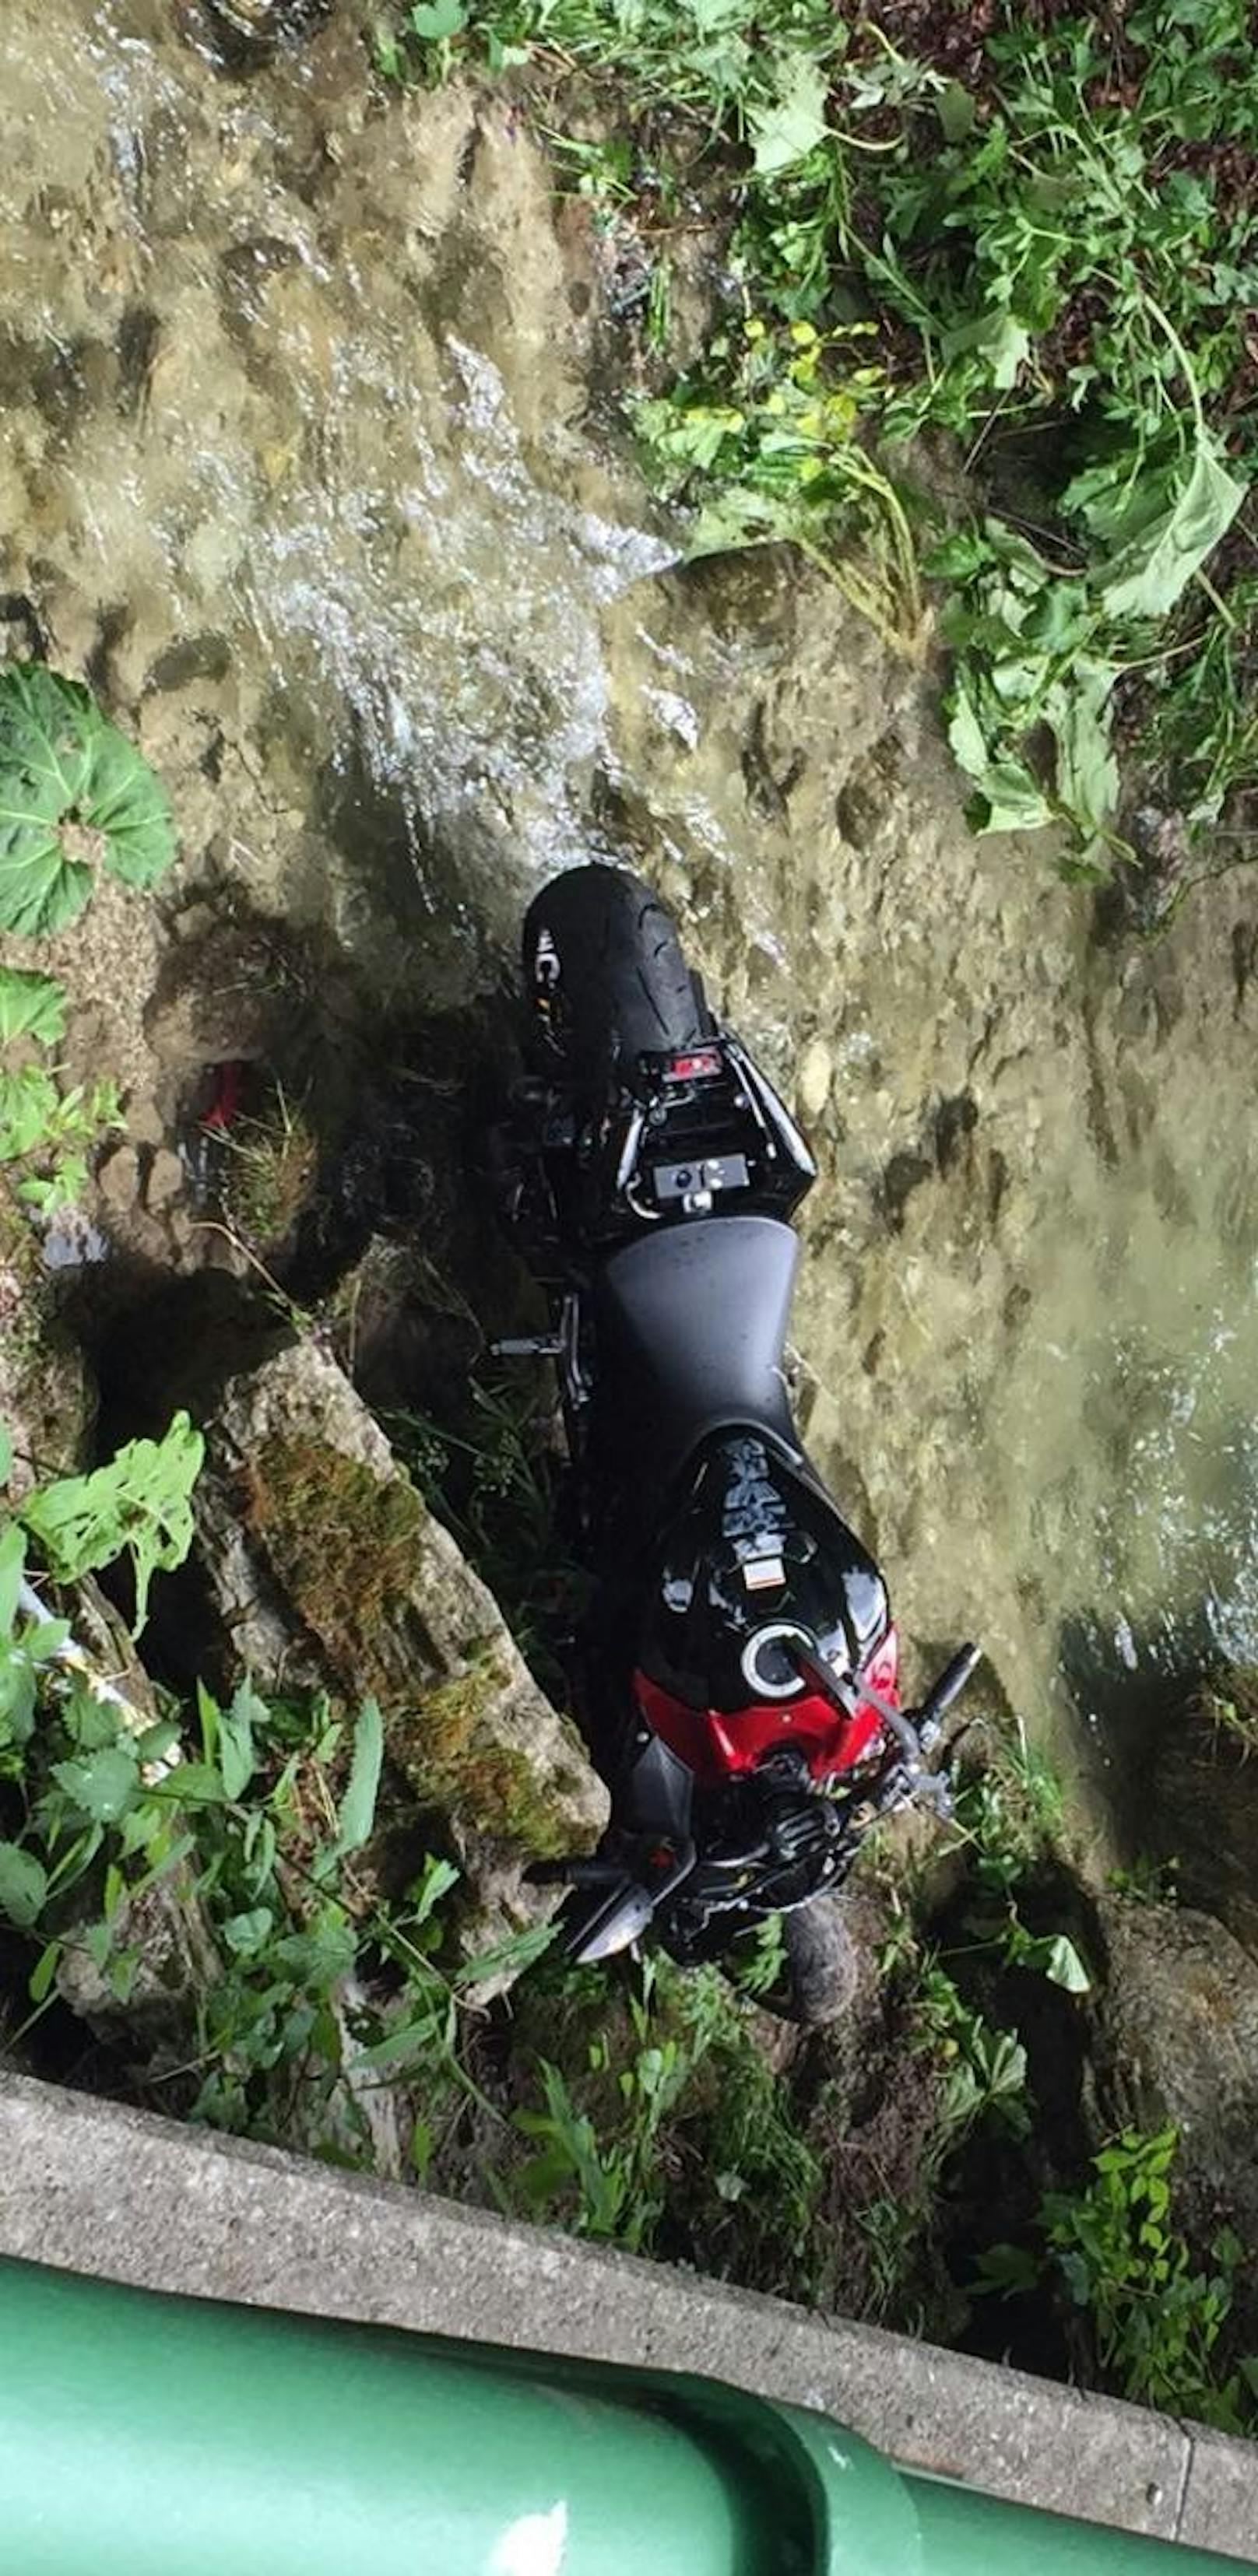 Biker zog Motorradfahrer nach Crash aus Wasser